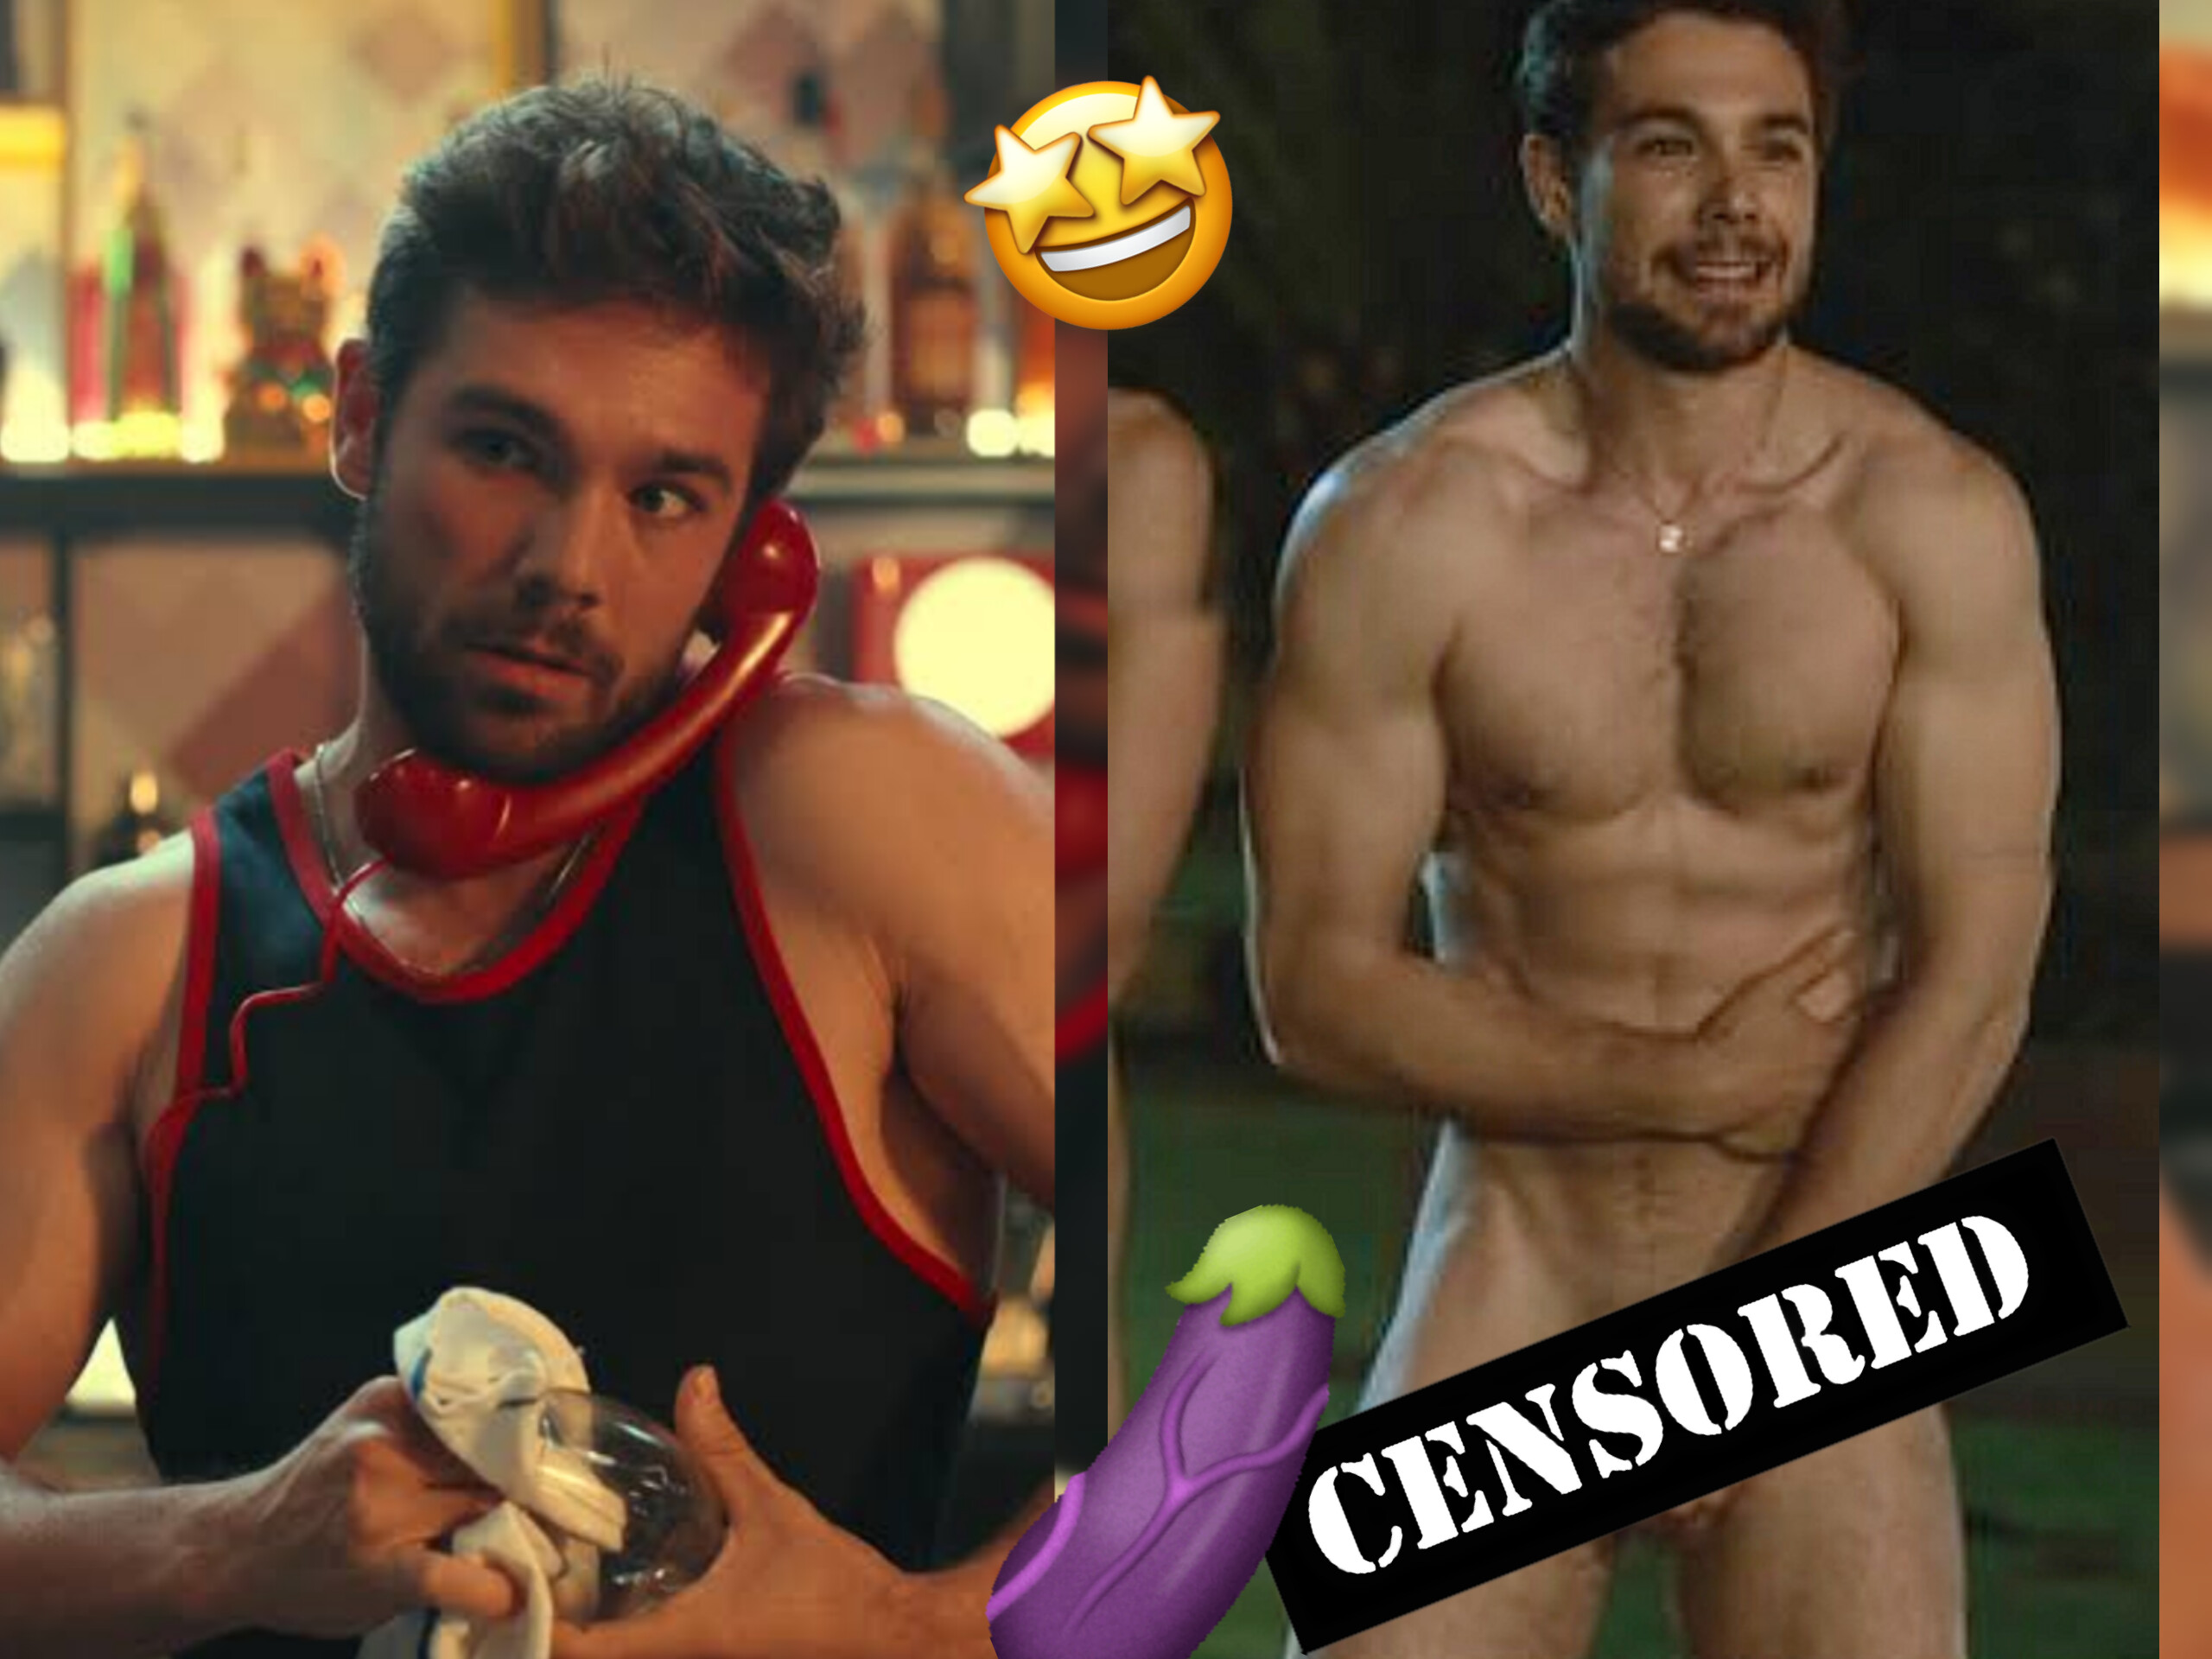 Ator Carlos Cuevas queridinho das séries gays da Netflix peladão, cena mostrando o pinto sem censura é incrível!